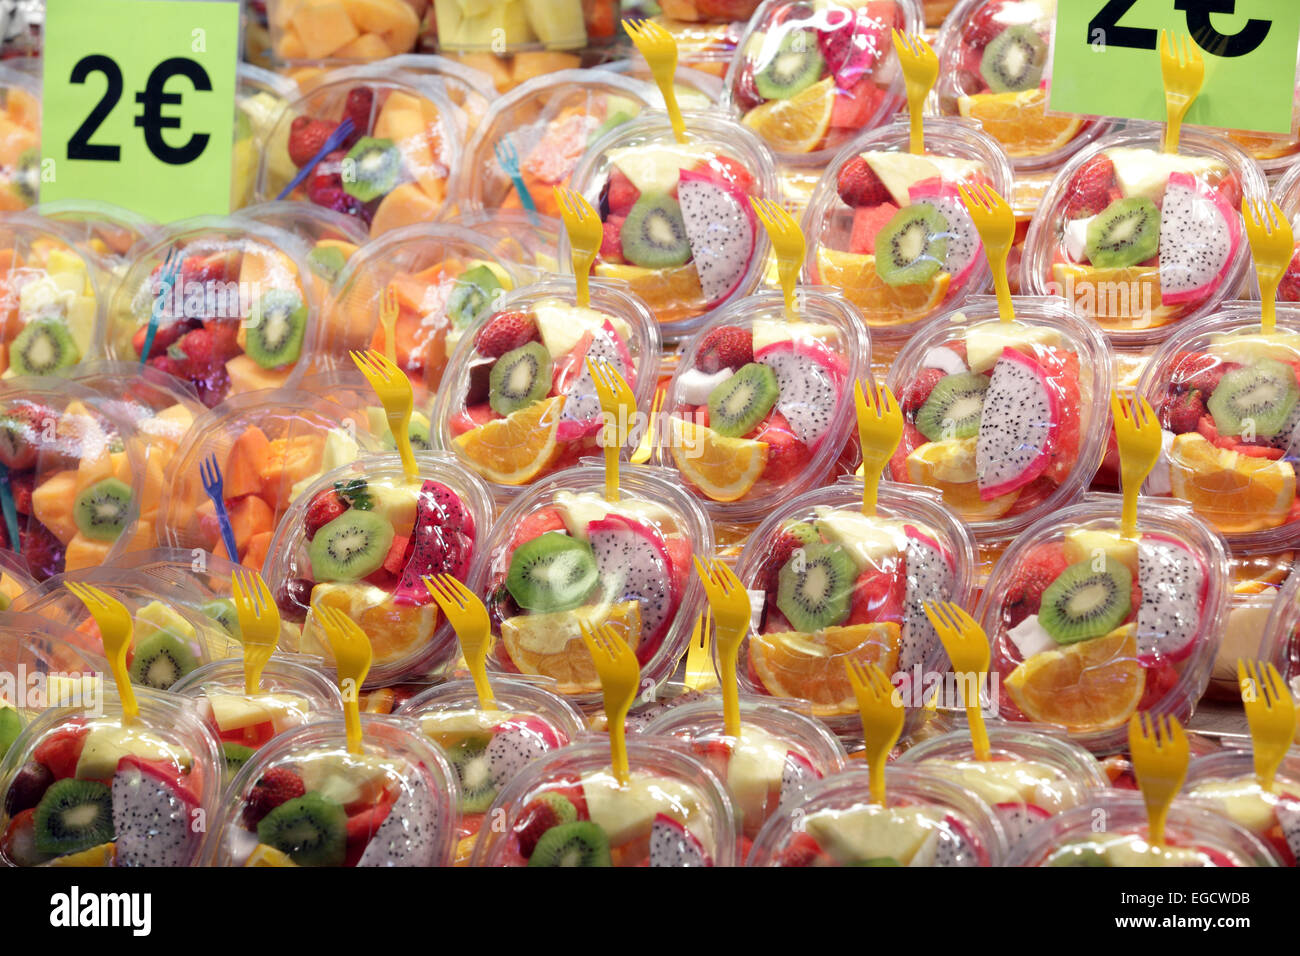 Vistosamente coloridas ensaladas de fruta fresca y saludable para la venta en el mercado de alimentos, la Rambas, Barcelona, España Foto de stock